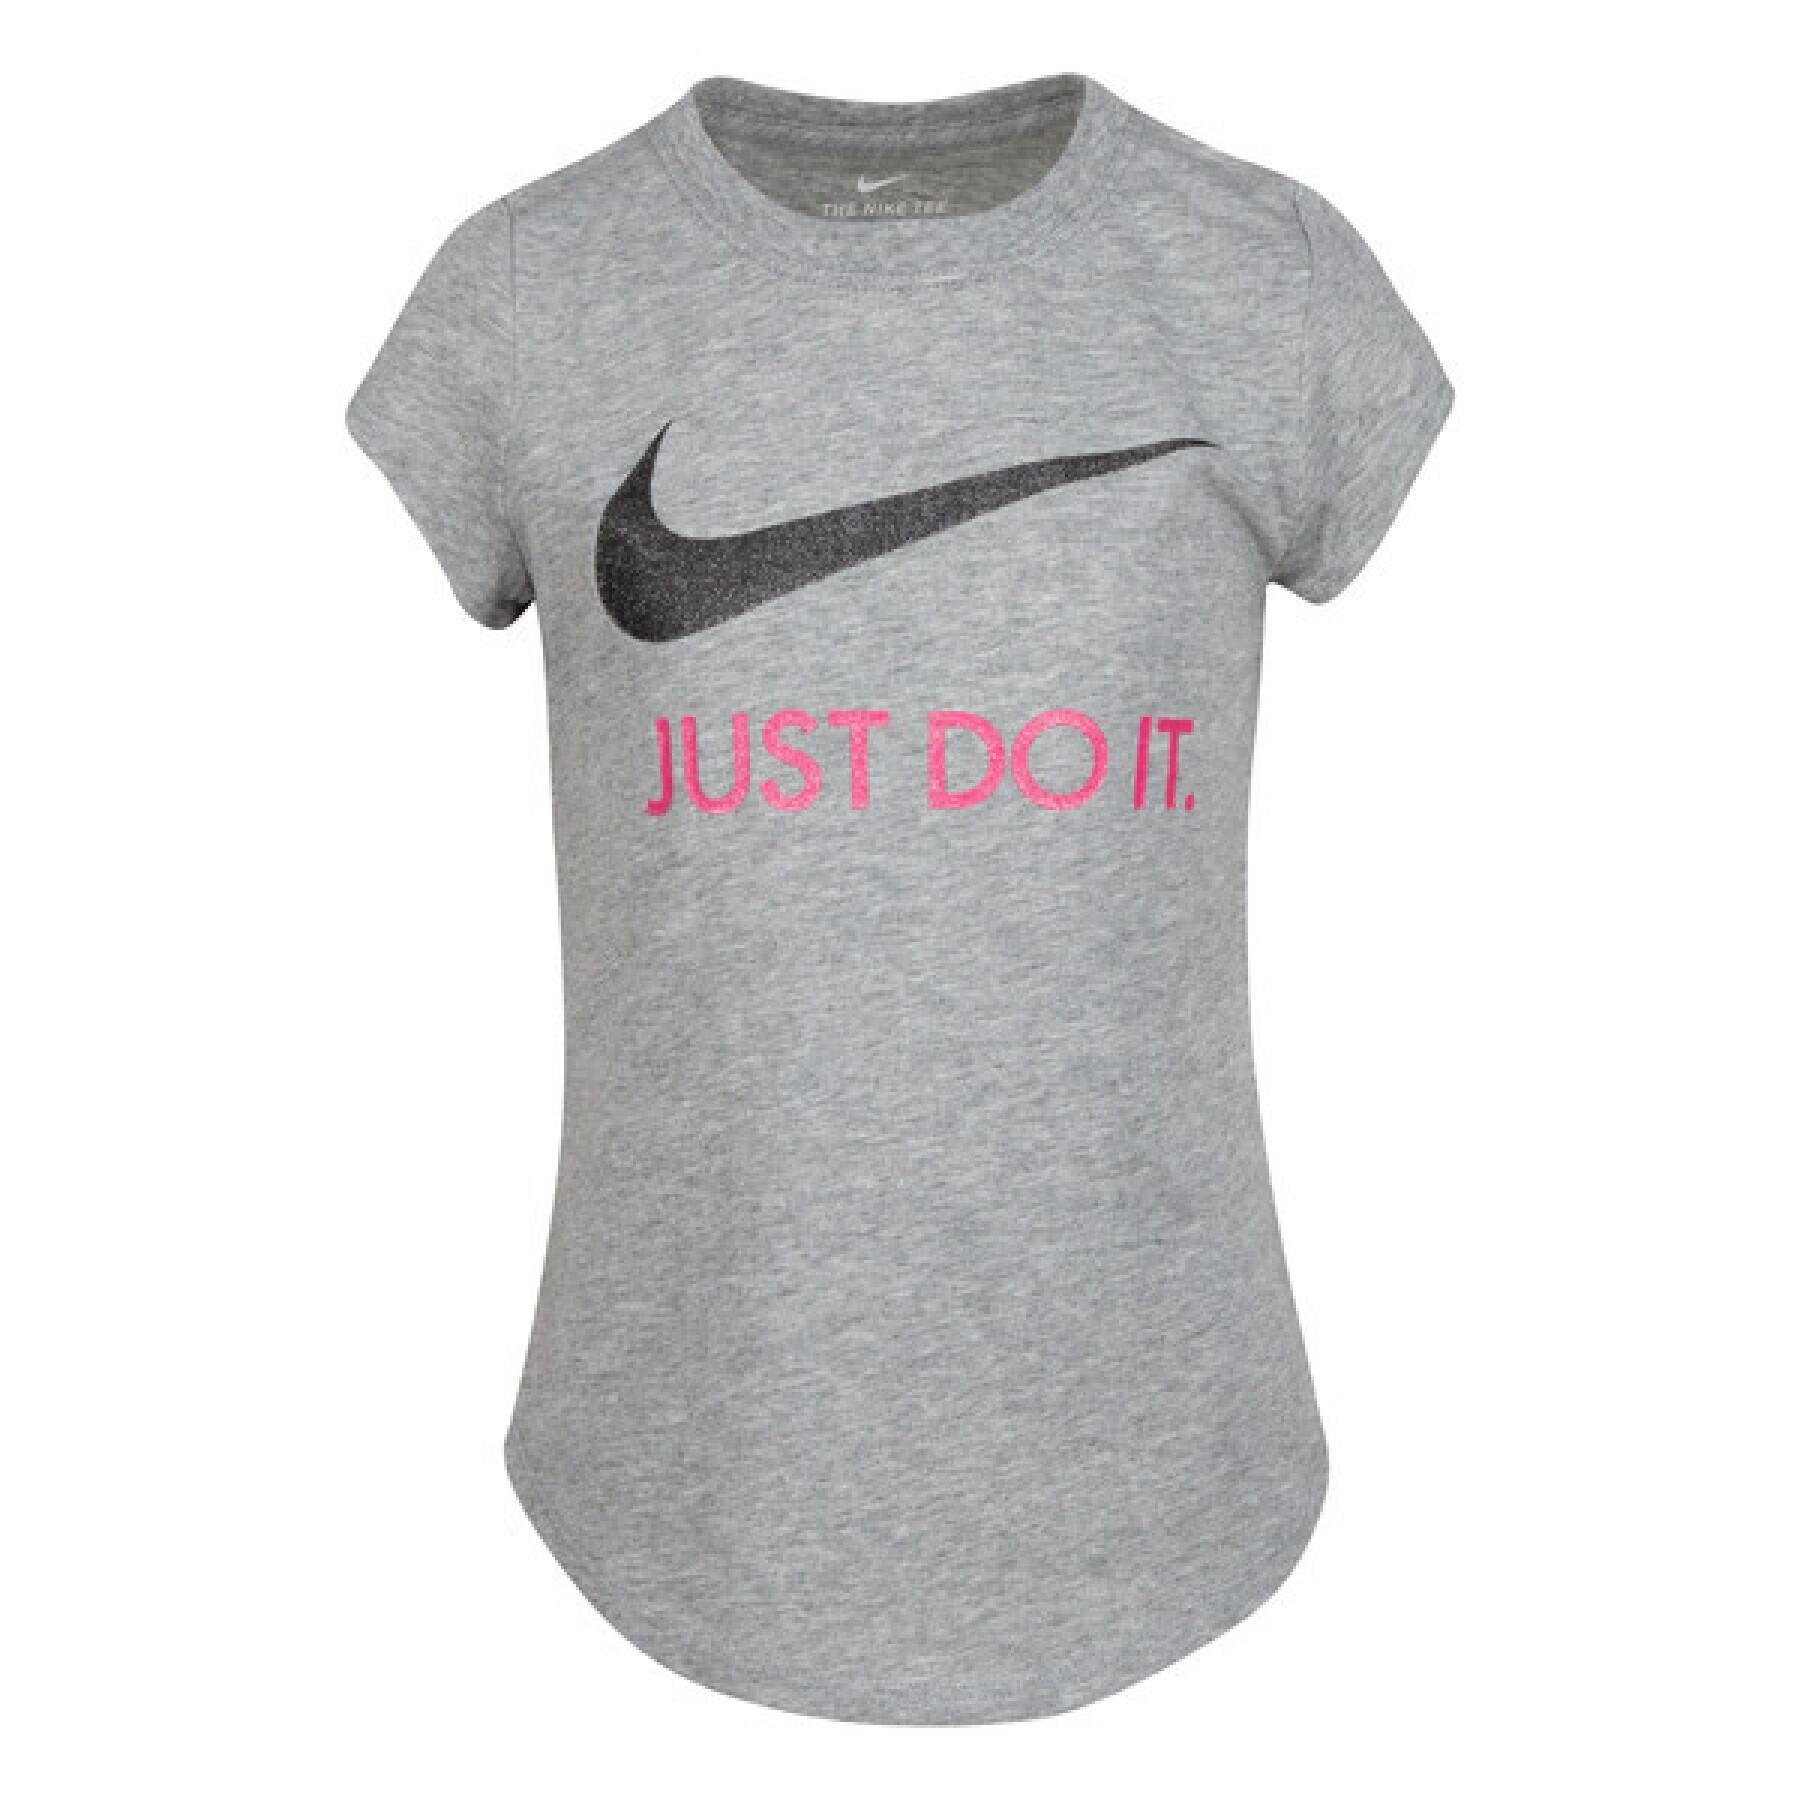 T-shirt fille Nike Swoosh JDI